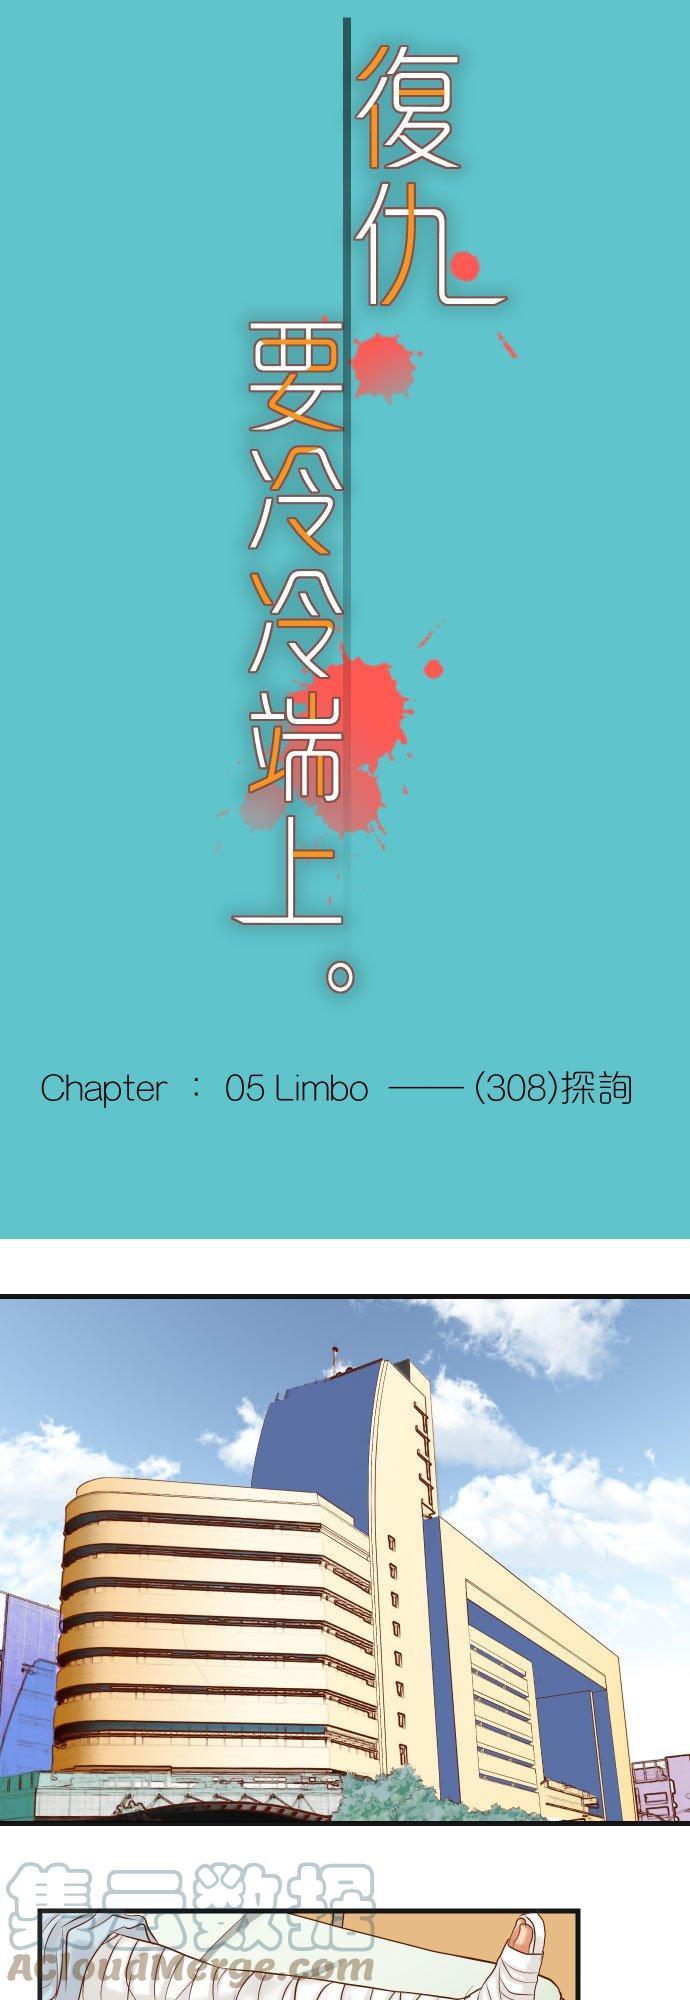 第五章 Limbo 308 探询6